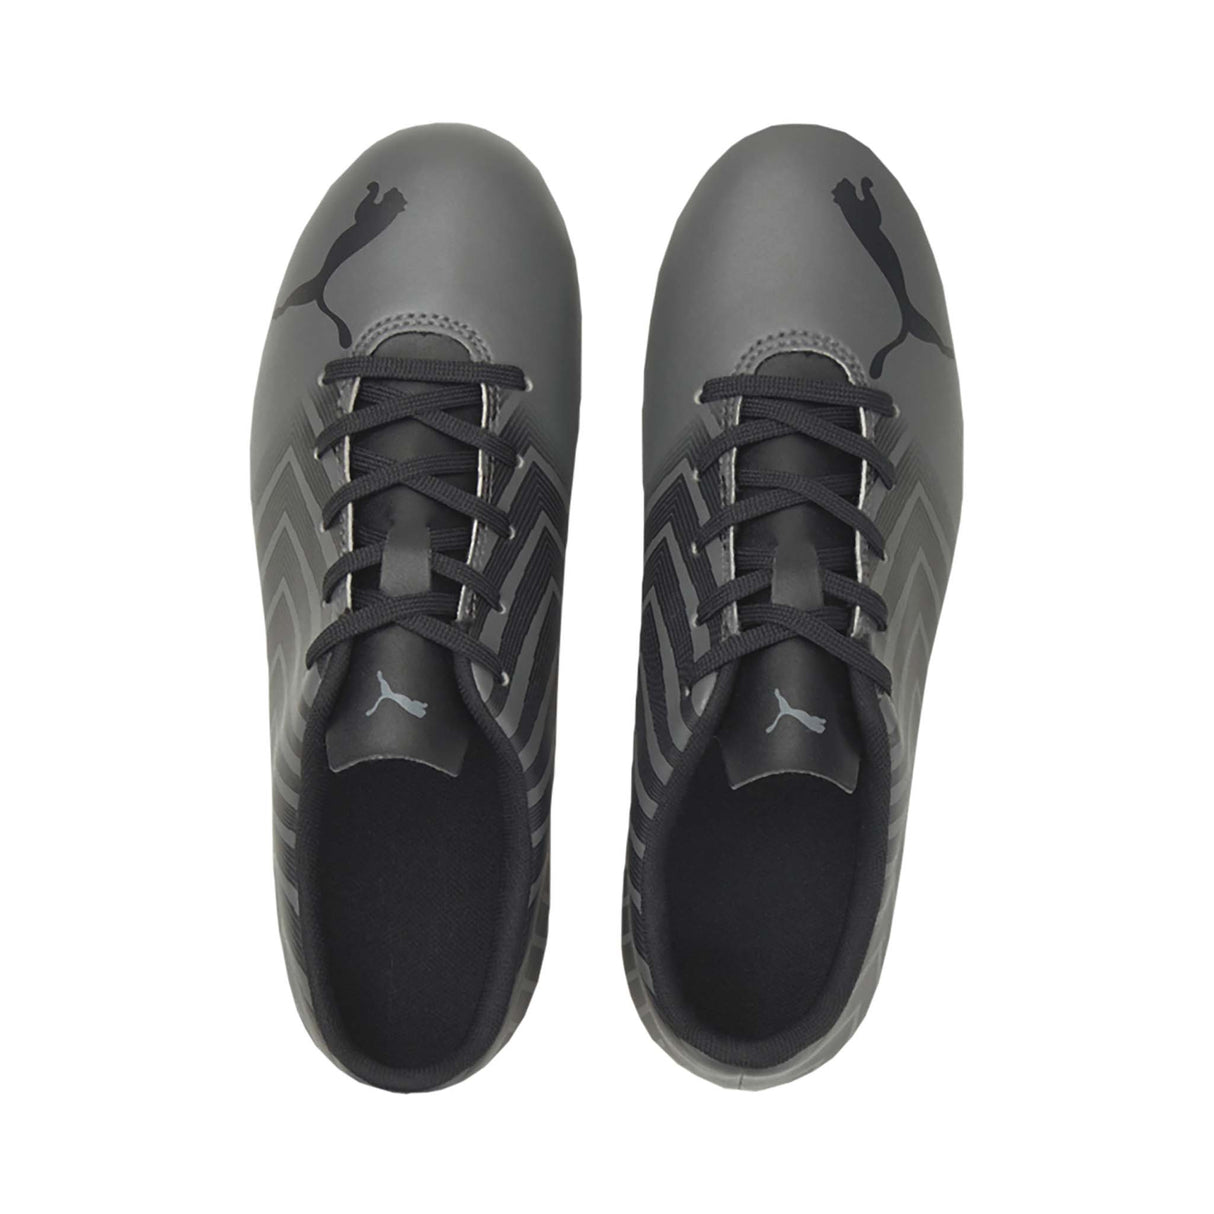 Puma Tacto II FG/AG Junior souliers soccer crampons gris noir enfant empeigne